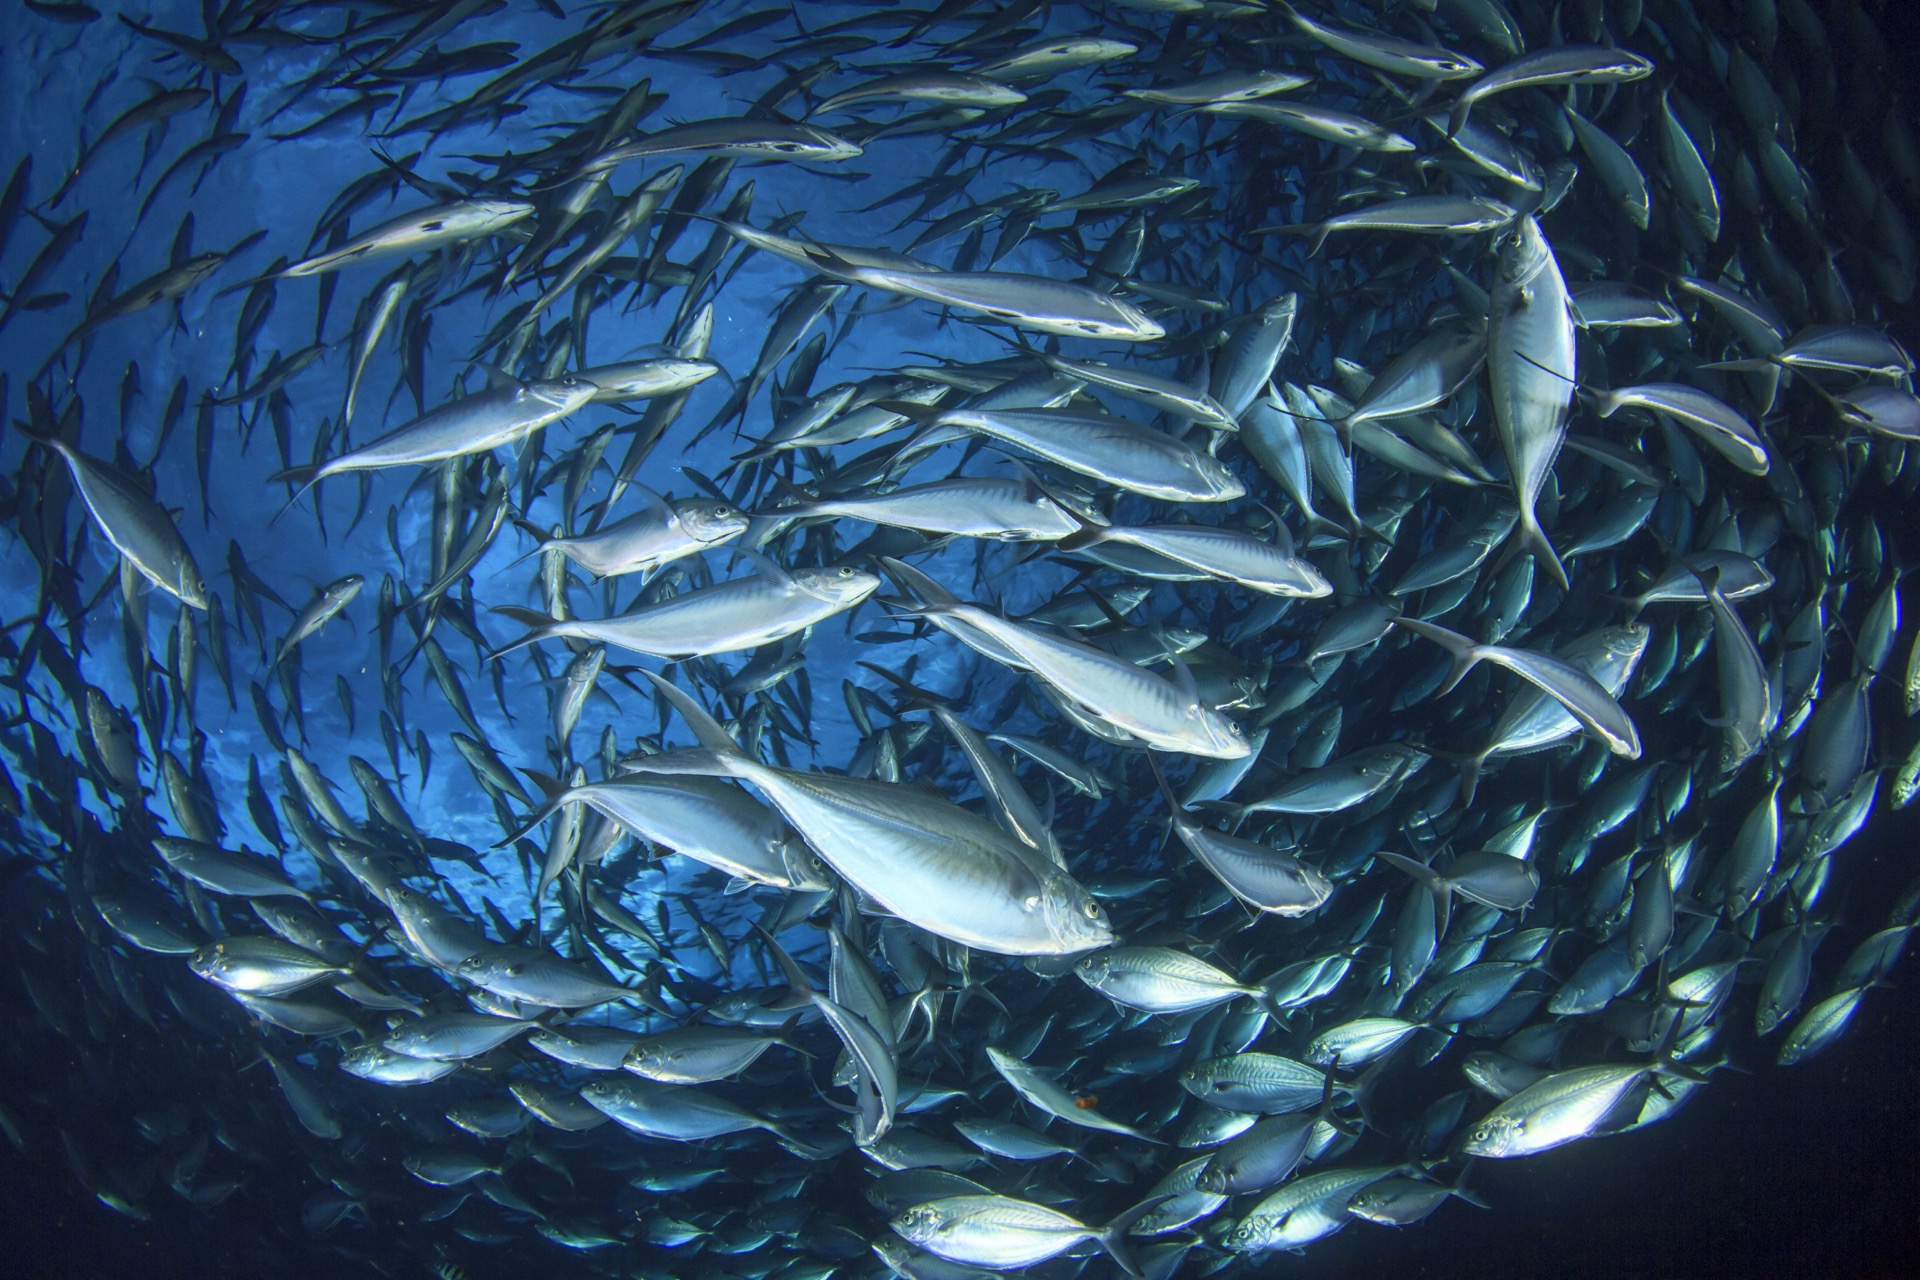 La mise en place de quotas de pêche et la lutte contre la pêche illégale permettent à certaines populations de poissons de mieux se porter. © Richard Carey, Adobe Stock